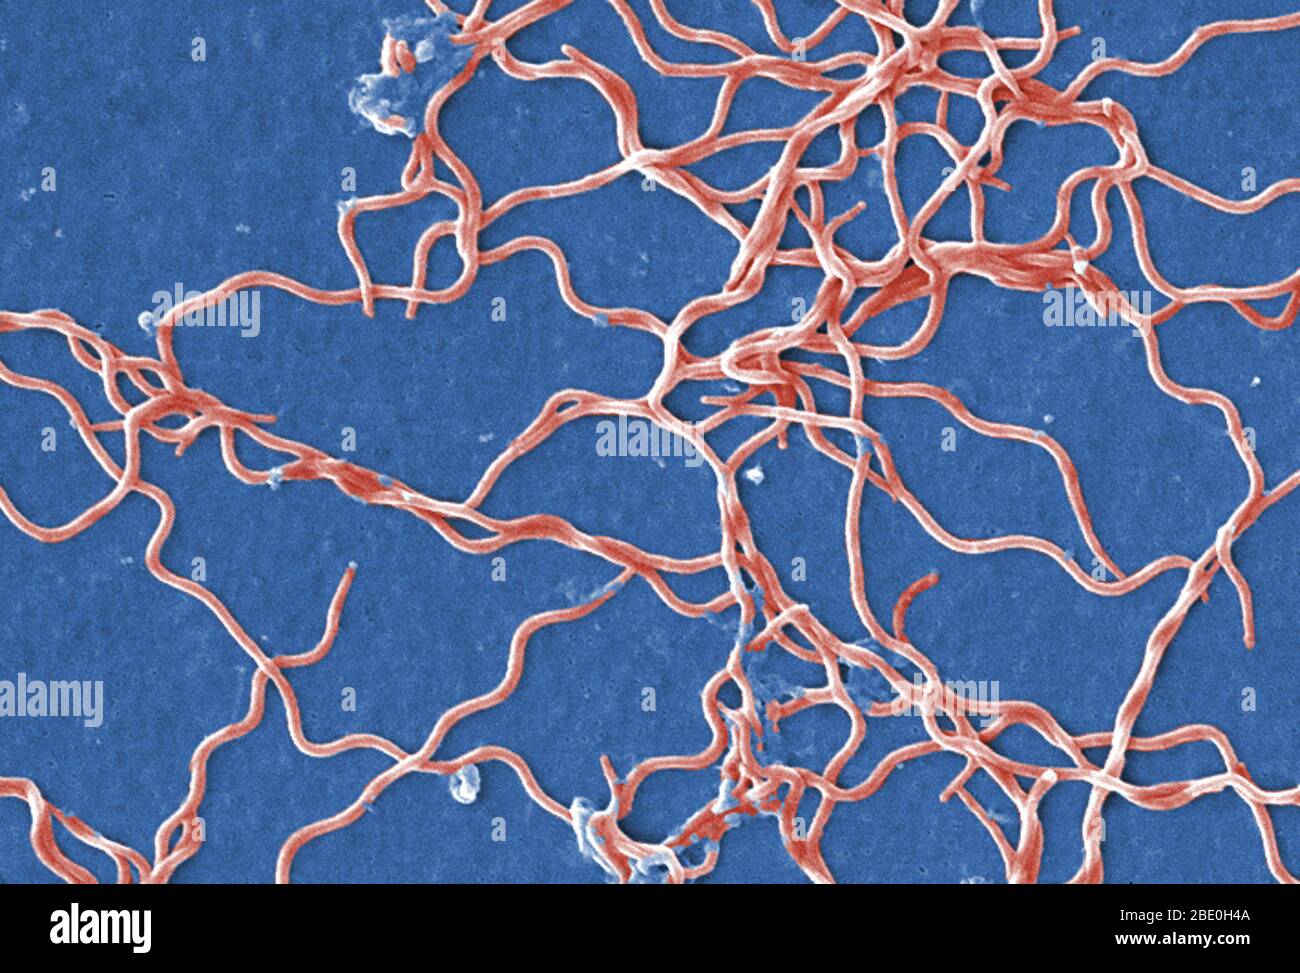 Der Rasterelektronenmikrograph (REM) zeigt eine Gruppierung zahlreicher Gram-negativer, anaerber, Borrelia burgdorferi-Bakterien, die aus einer reinen Kultur abgeleitet wurden. Dieser pathogene Organismus ist verantwortlich für die Entstehung der Krankheit Lyme-Borreliose, eine Zoonose, Vektor-übertragene Krankheit, auf den Menschen durch einen Zeckenstich übertragen. B. burgdorferi gehört zu einer Gruppe von Bakterien genannt Spirochetes, deren Aussehen ähnelt einer Spiralfeder. B. burgdorferi Bakterien können mehrere Teile des Körpers infizieren, wodurch verschiedene Symptome zu verschiedenen Zeiten. Nicht alle Patienten mit Lyme-Borreliose wird alle sympto haben Stockfoto